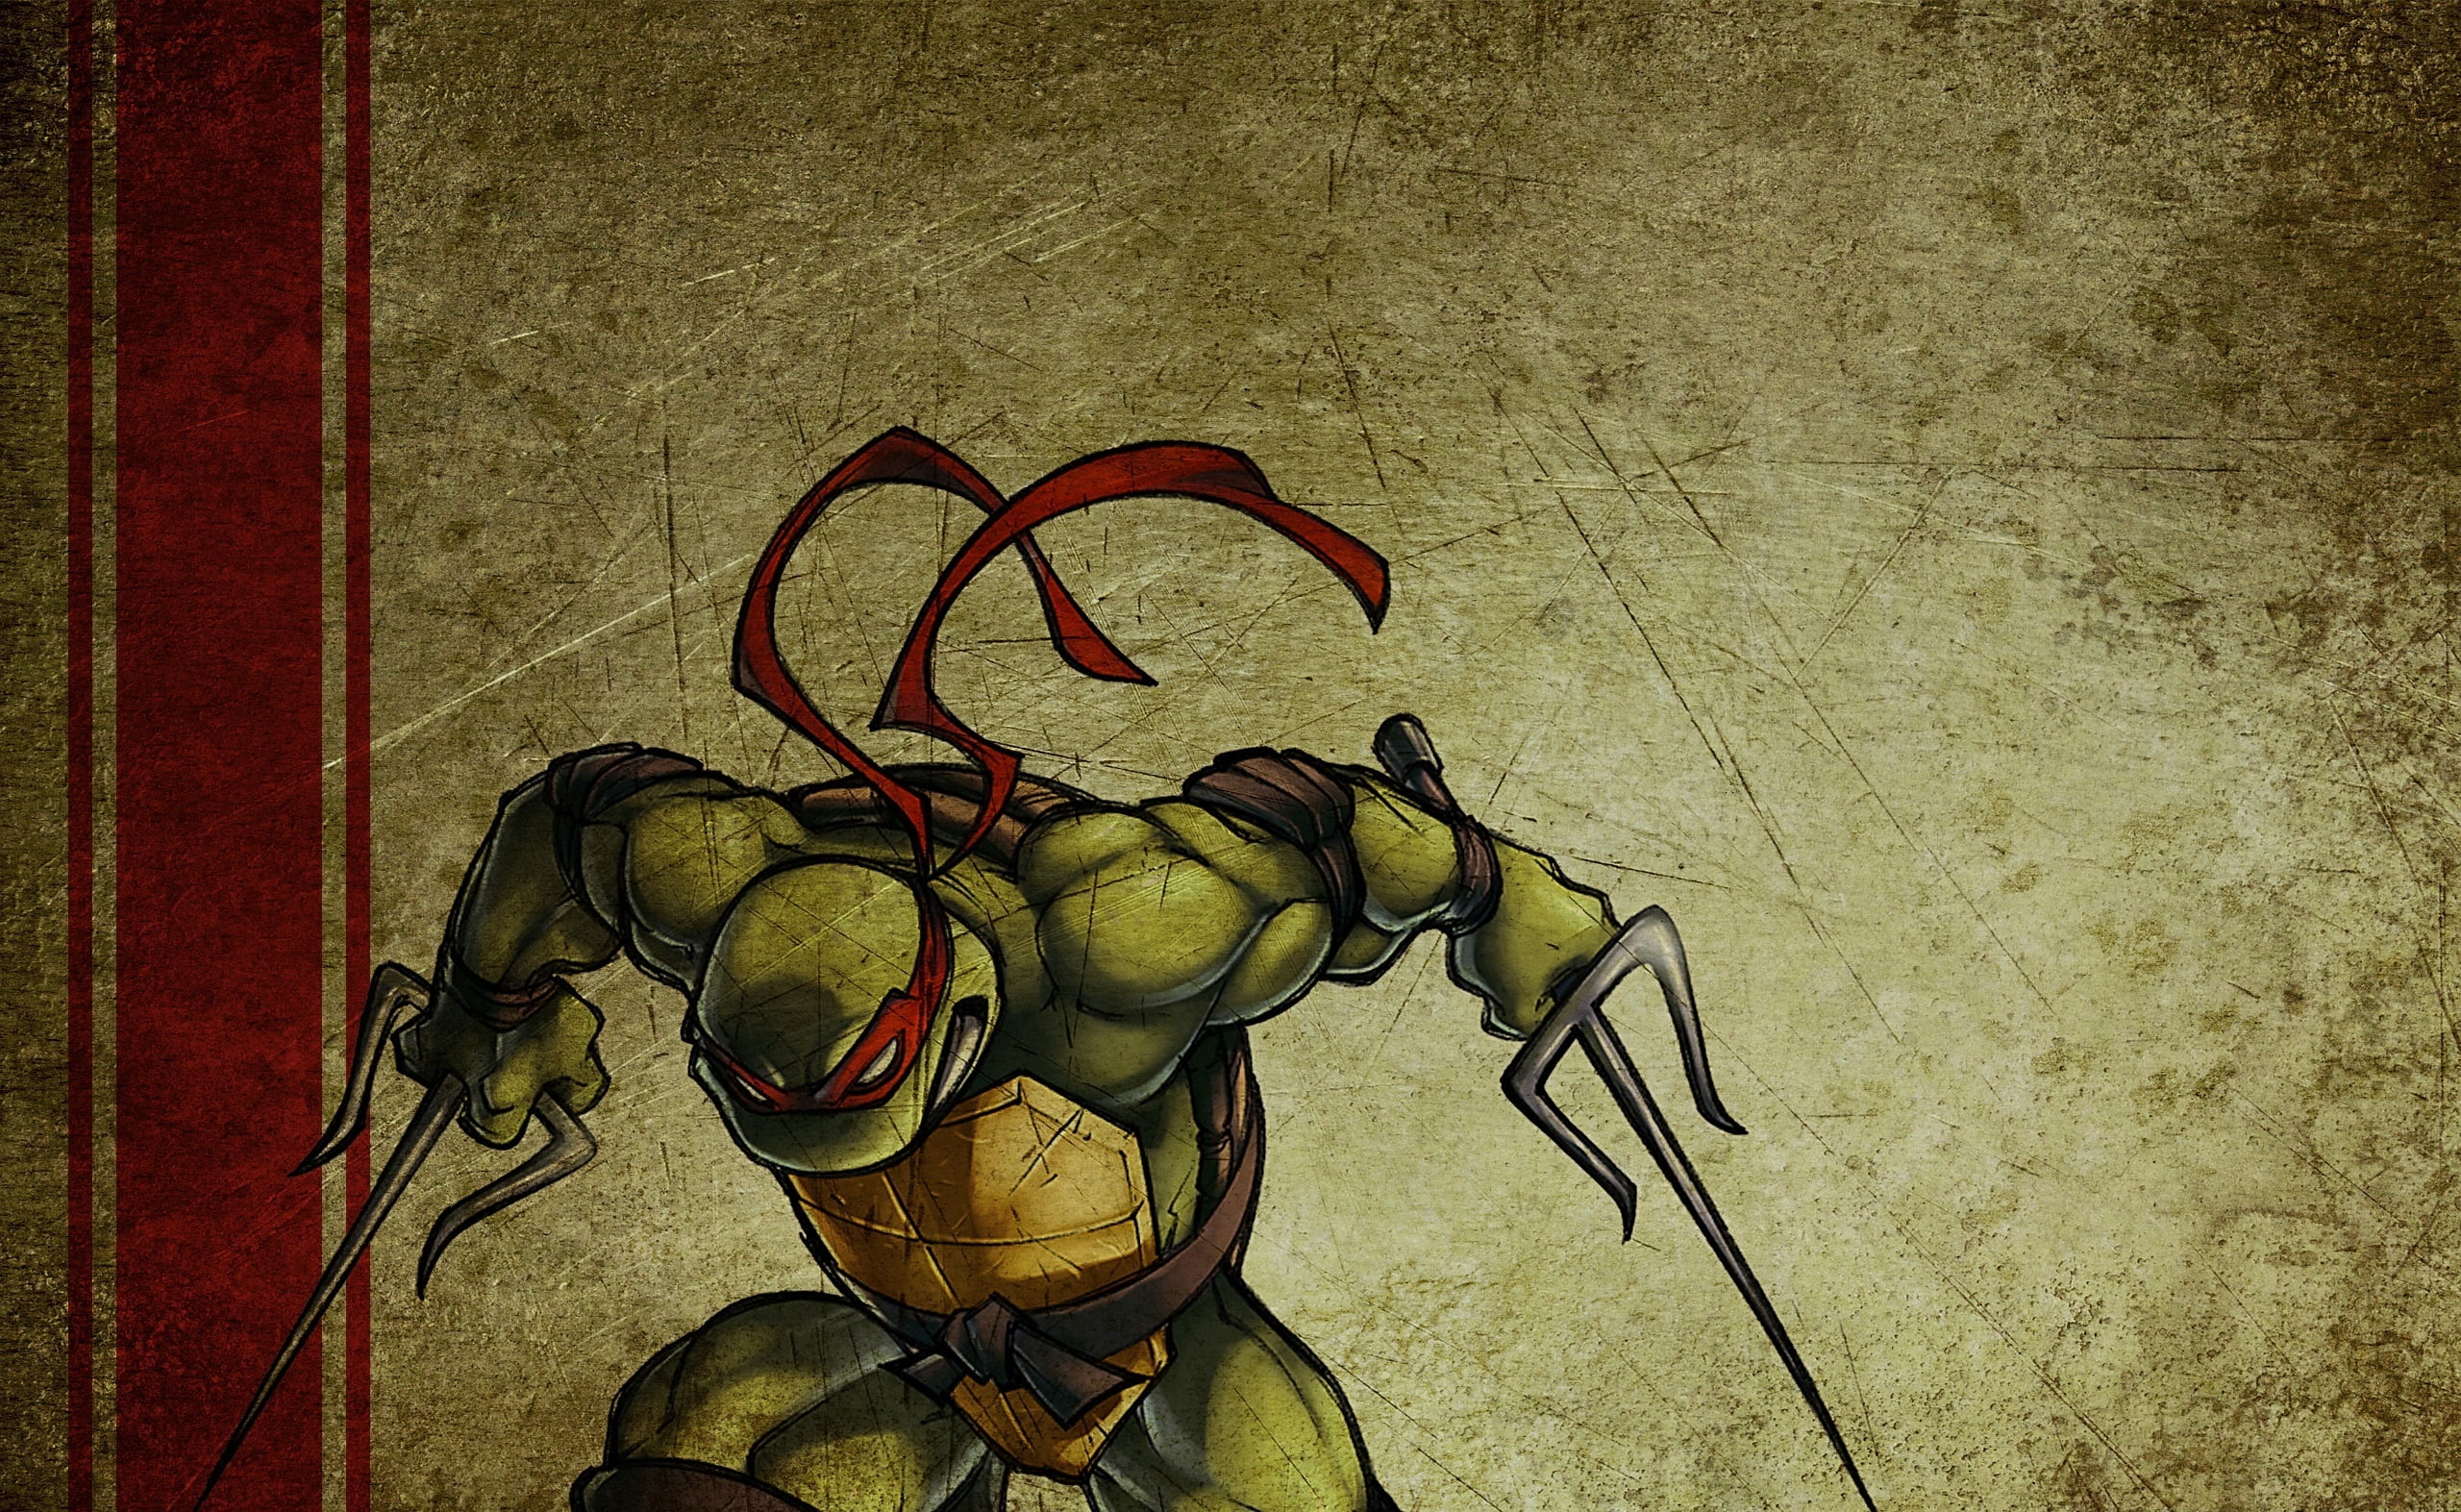 Raphael Teenage Mutant Ninja Turtles, Raphael TMNT illustration